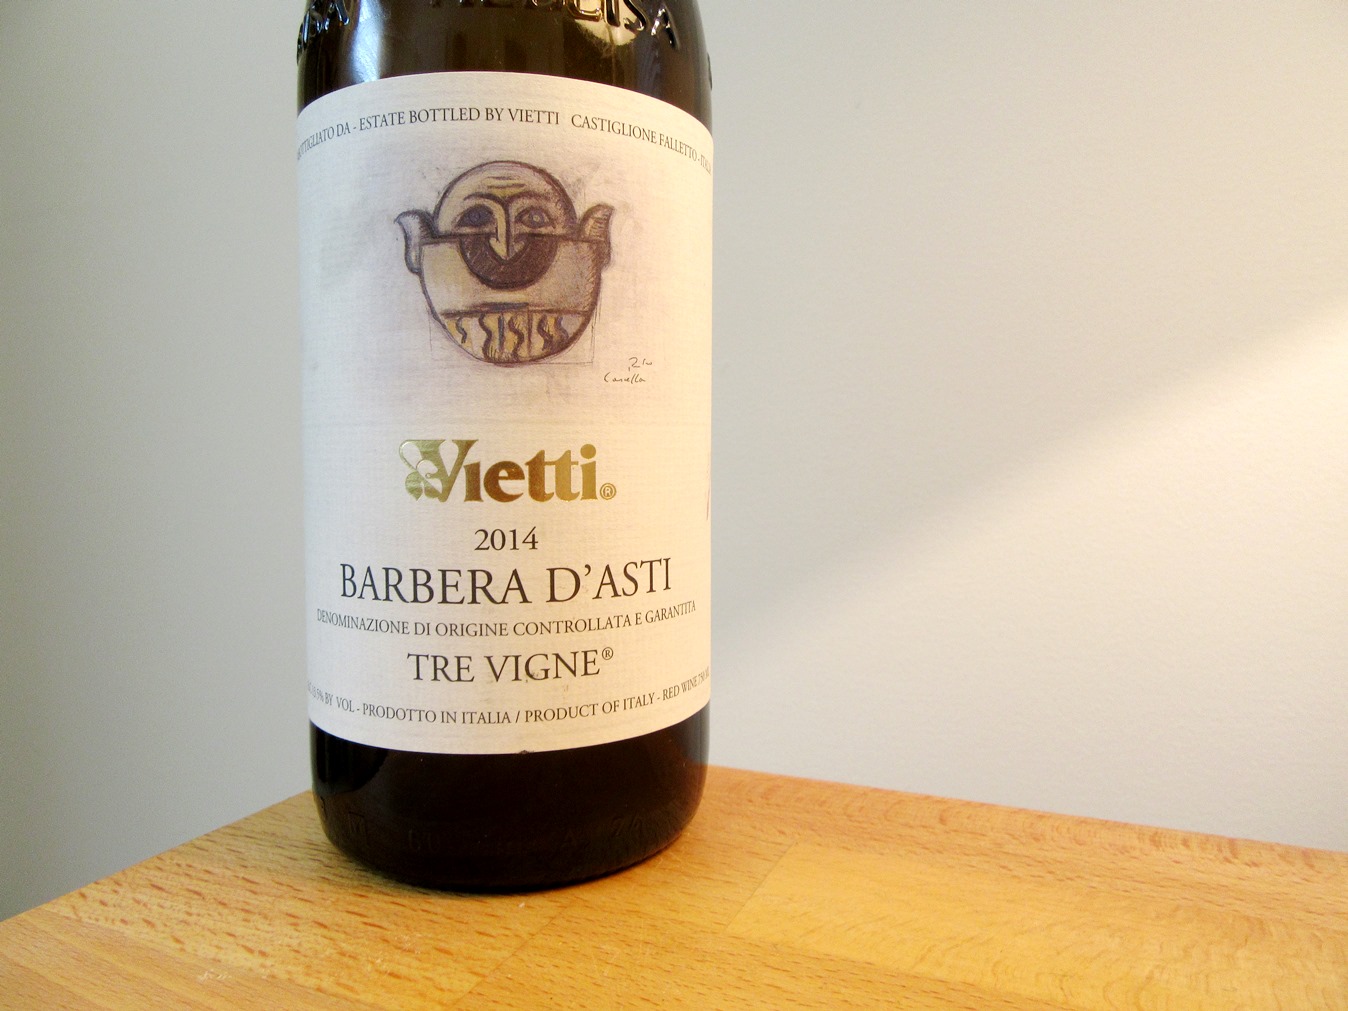 Vietti Tre Vigne, Barbera D’Asti 2014 DOCG, Piemonte, Italy, Wine Casual